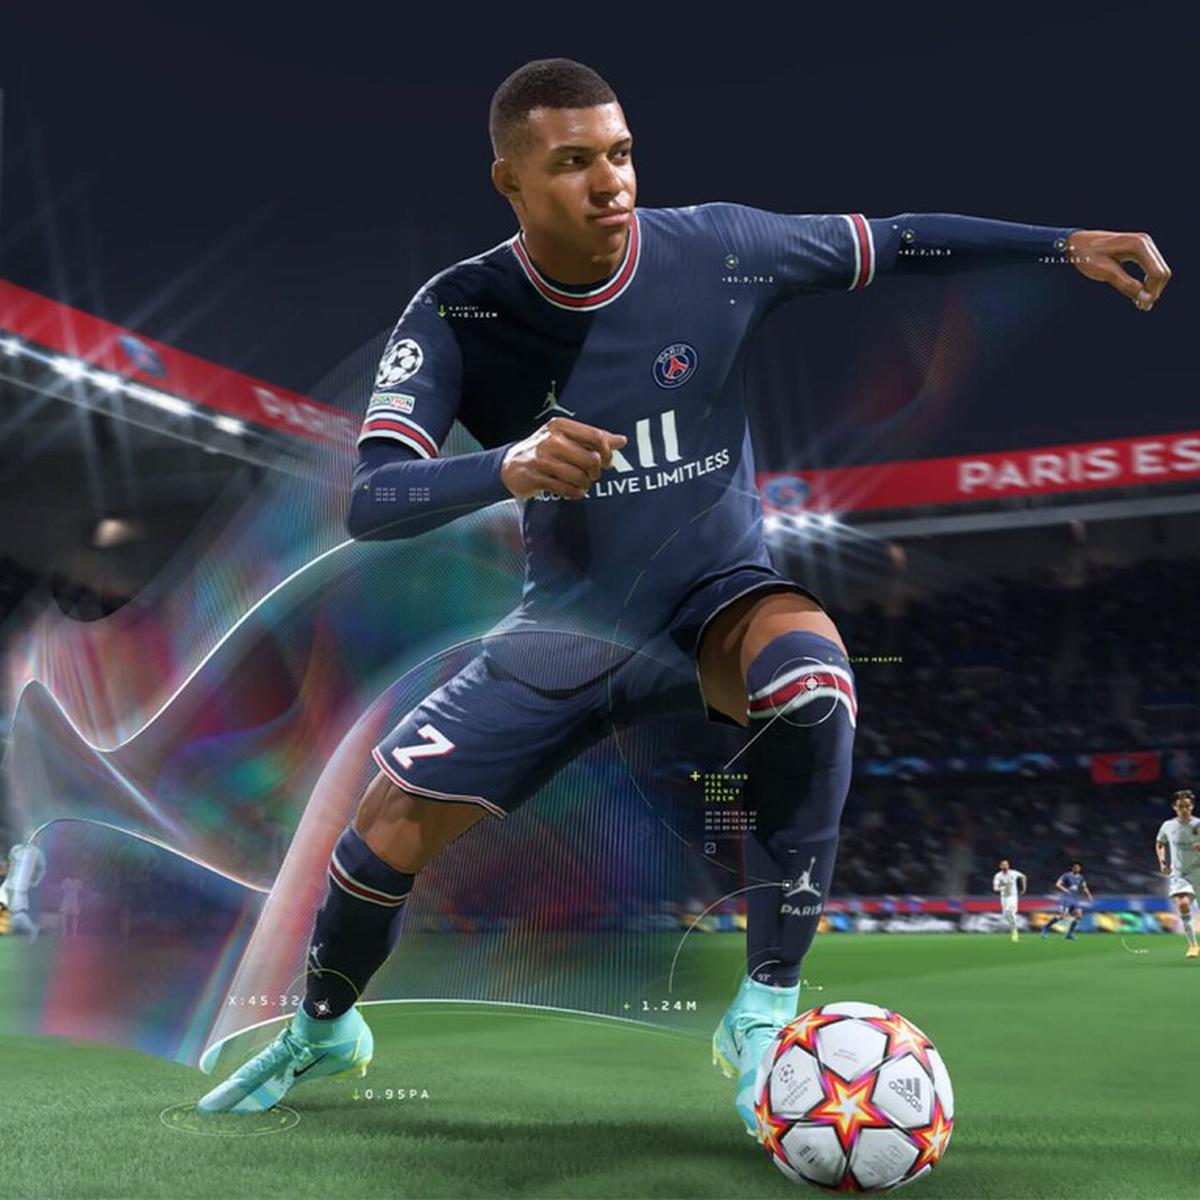 REQUISITOS FIFA 23 PC  Que necesitas para jugar 